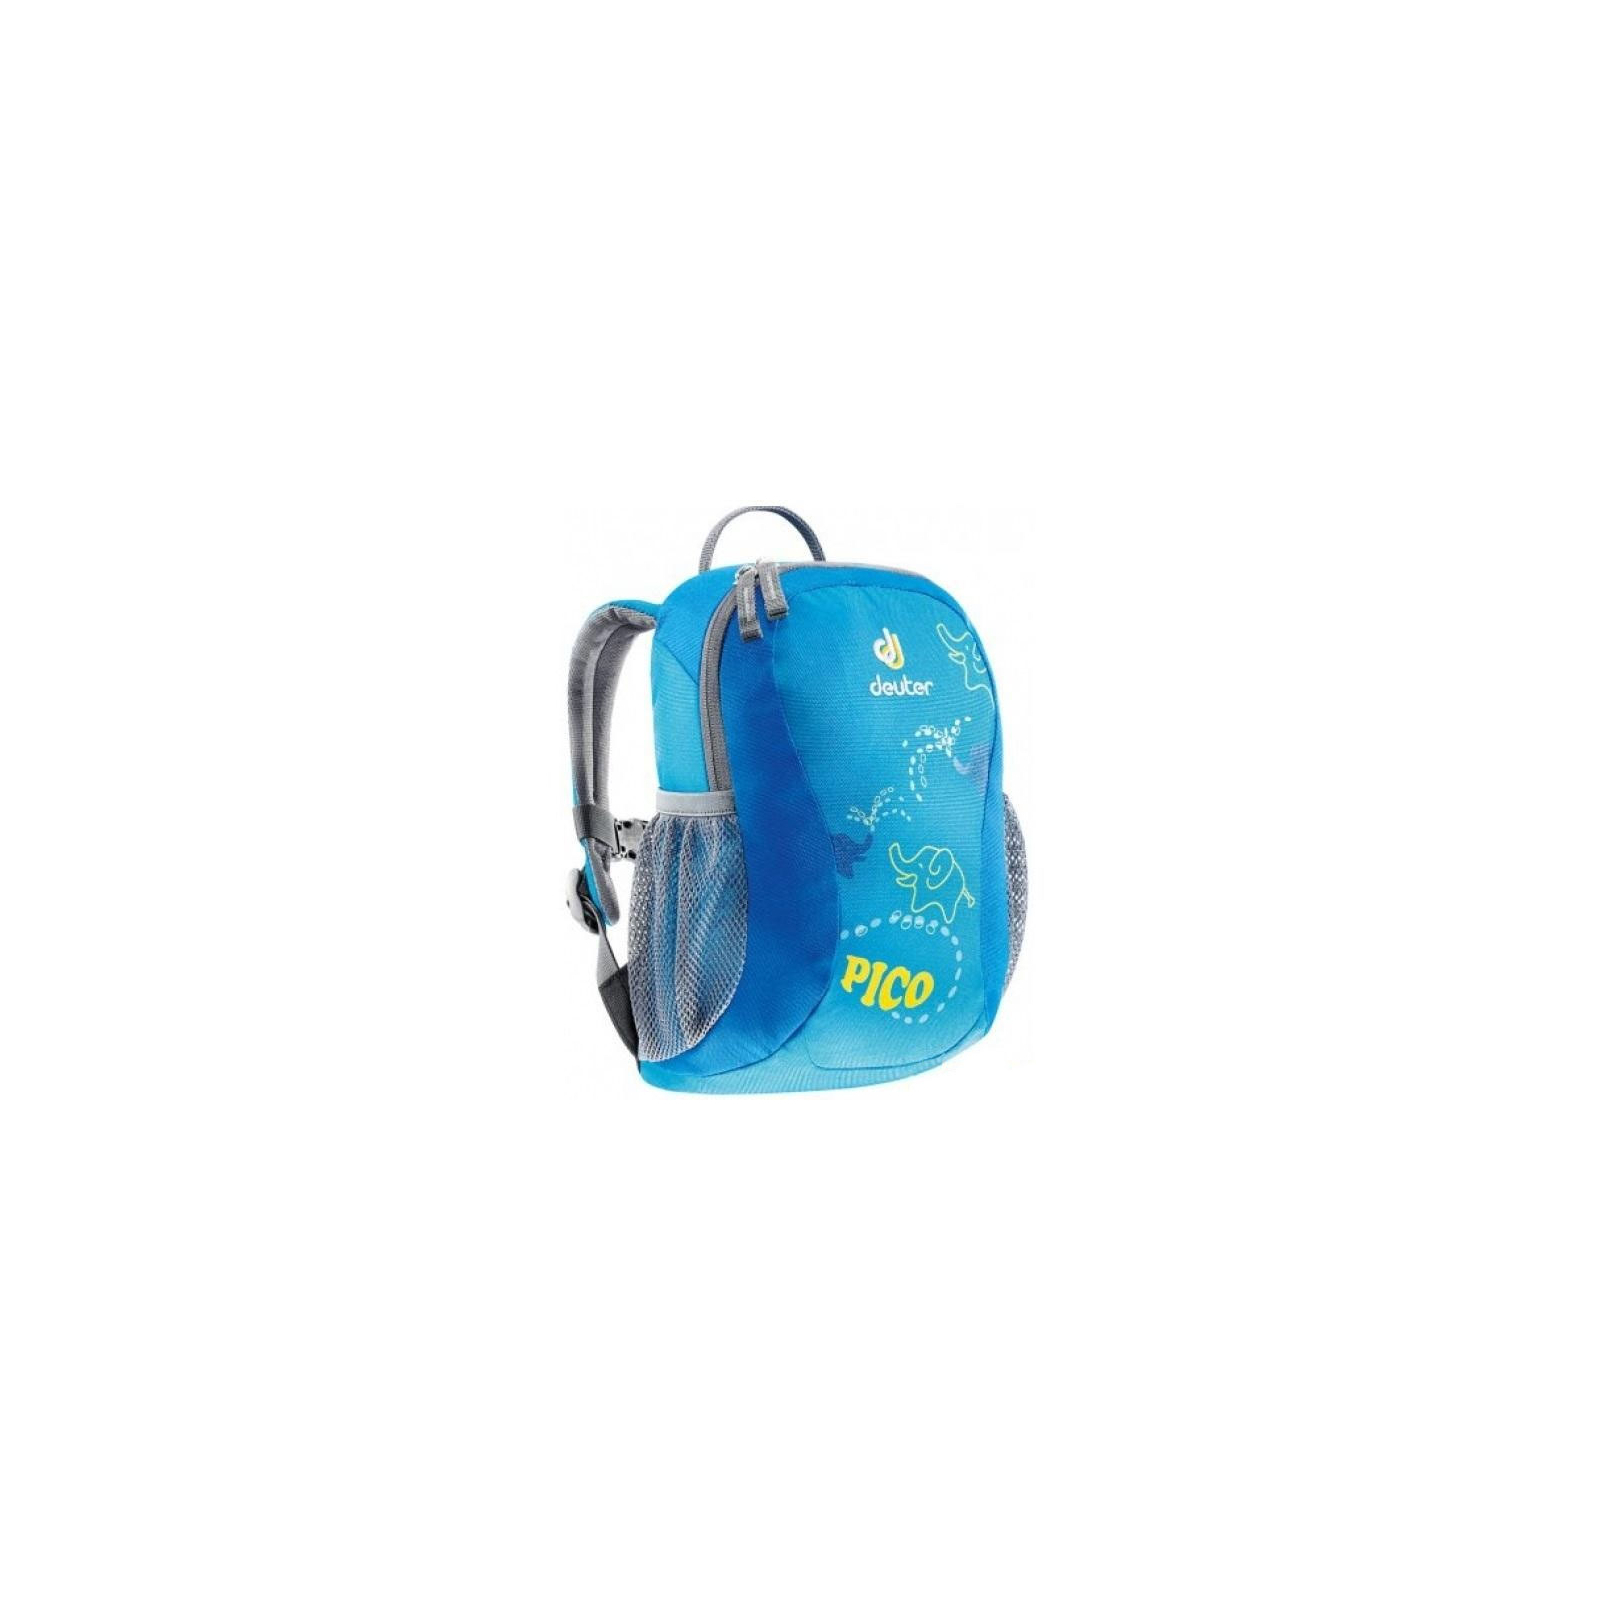 Рюкзак туристичний Deuter Pico turquoise (36043 3006)